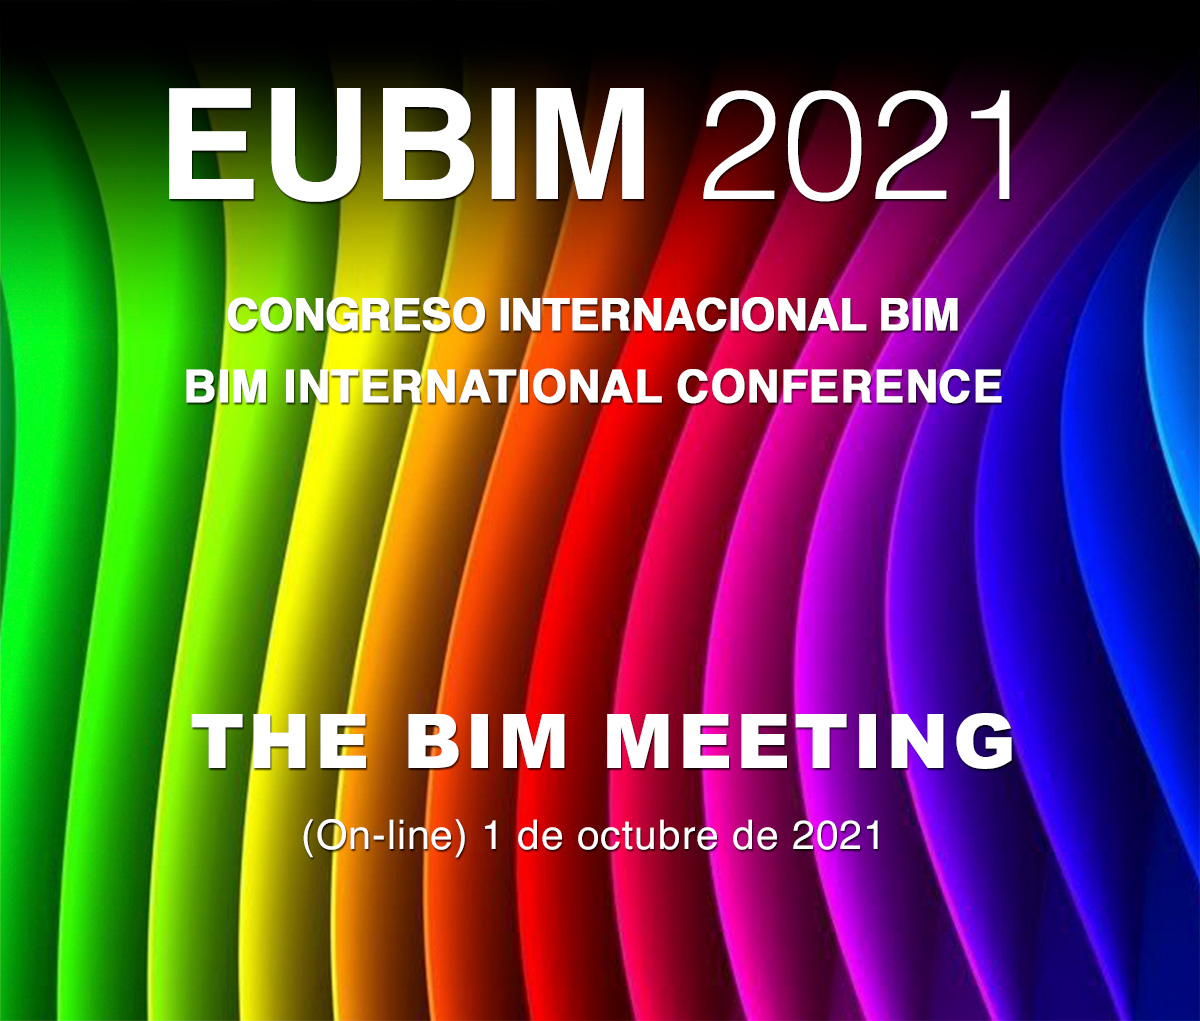 EUBIM 2021